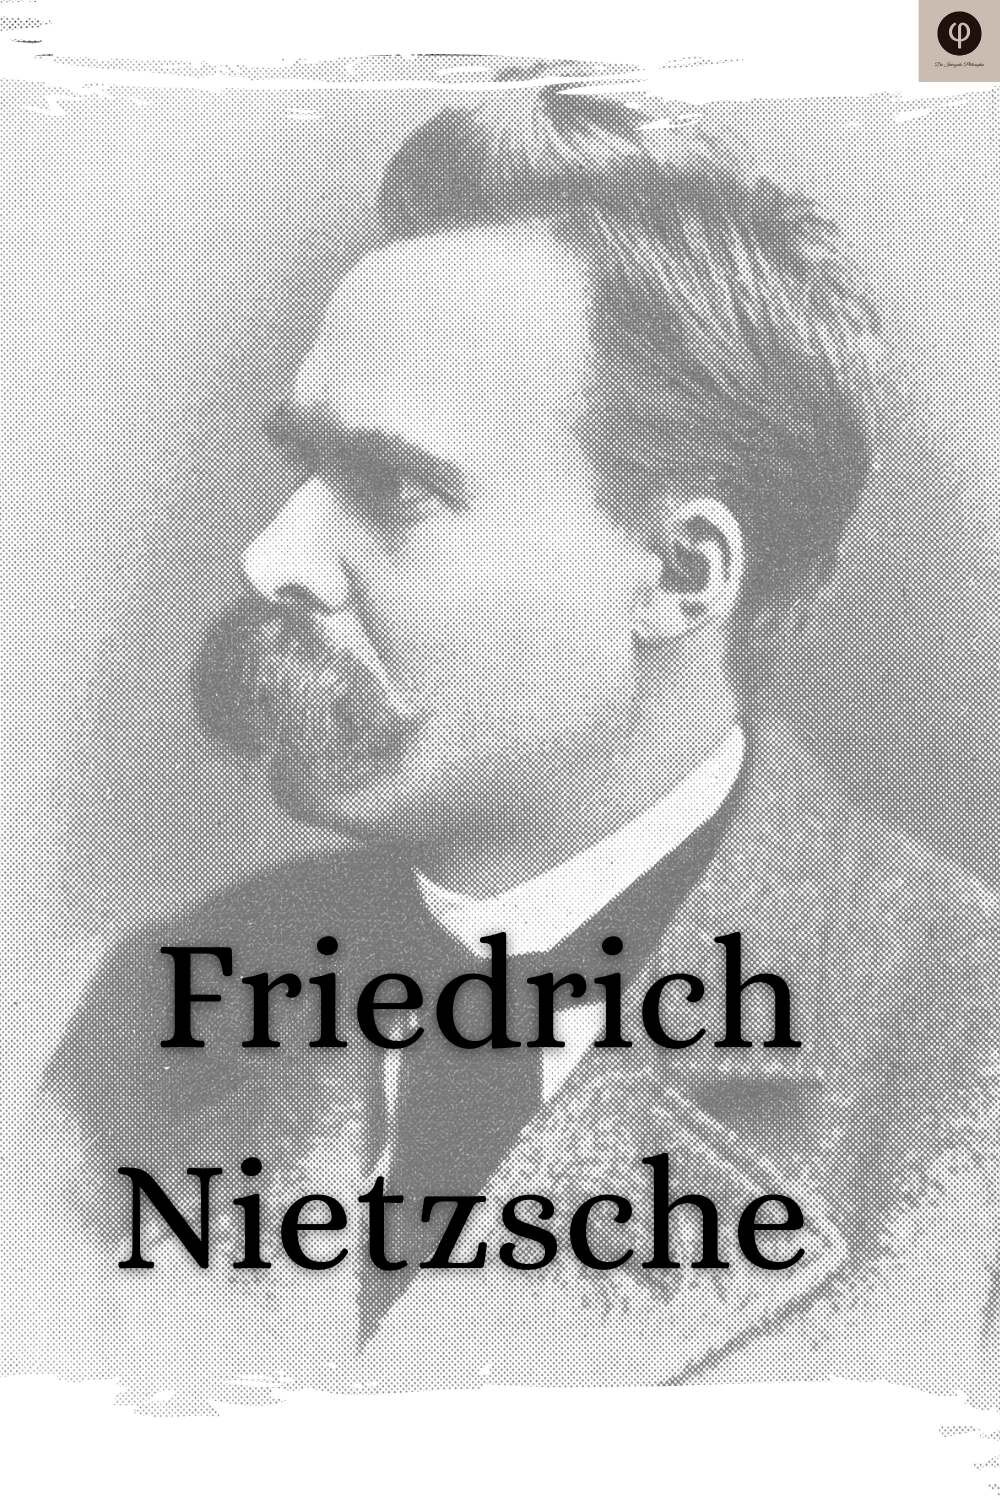 Nietzsche Zitate Spruche Uber Depression Mensch Welt